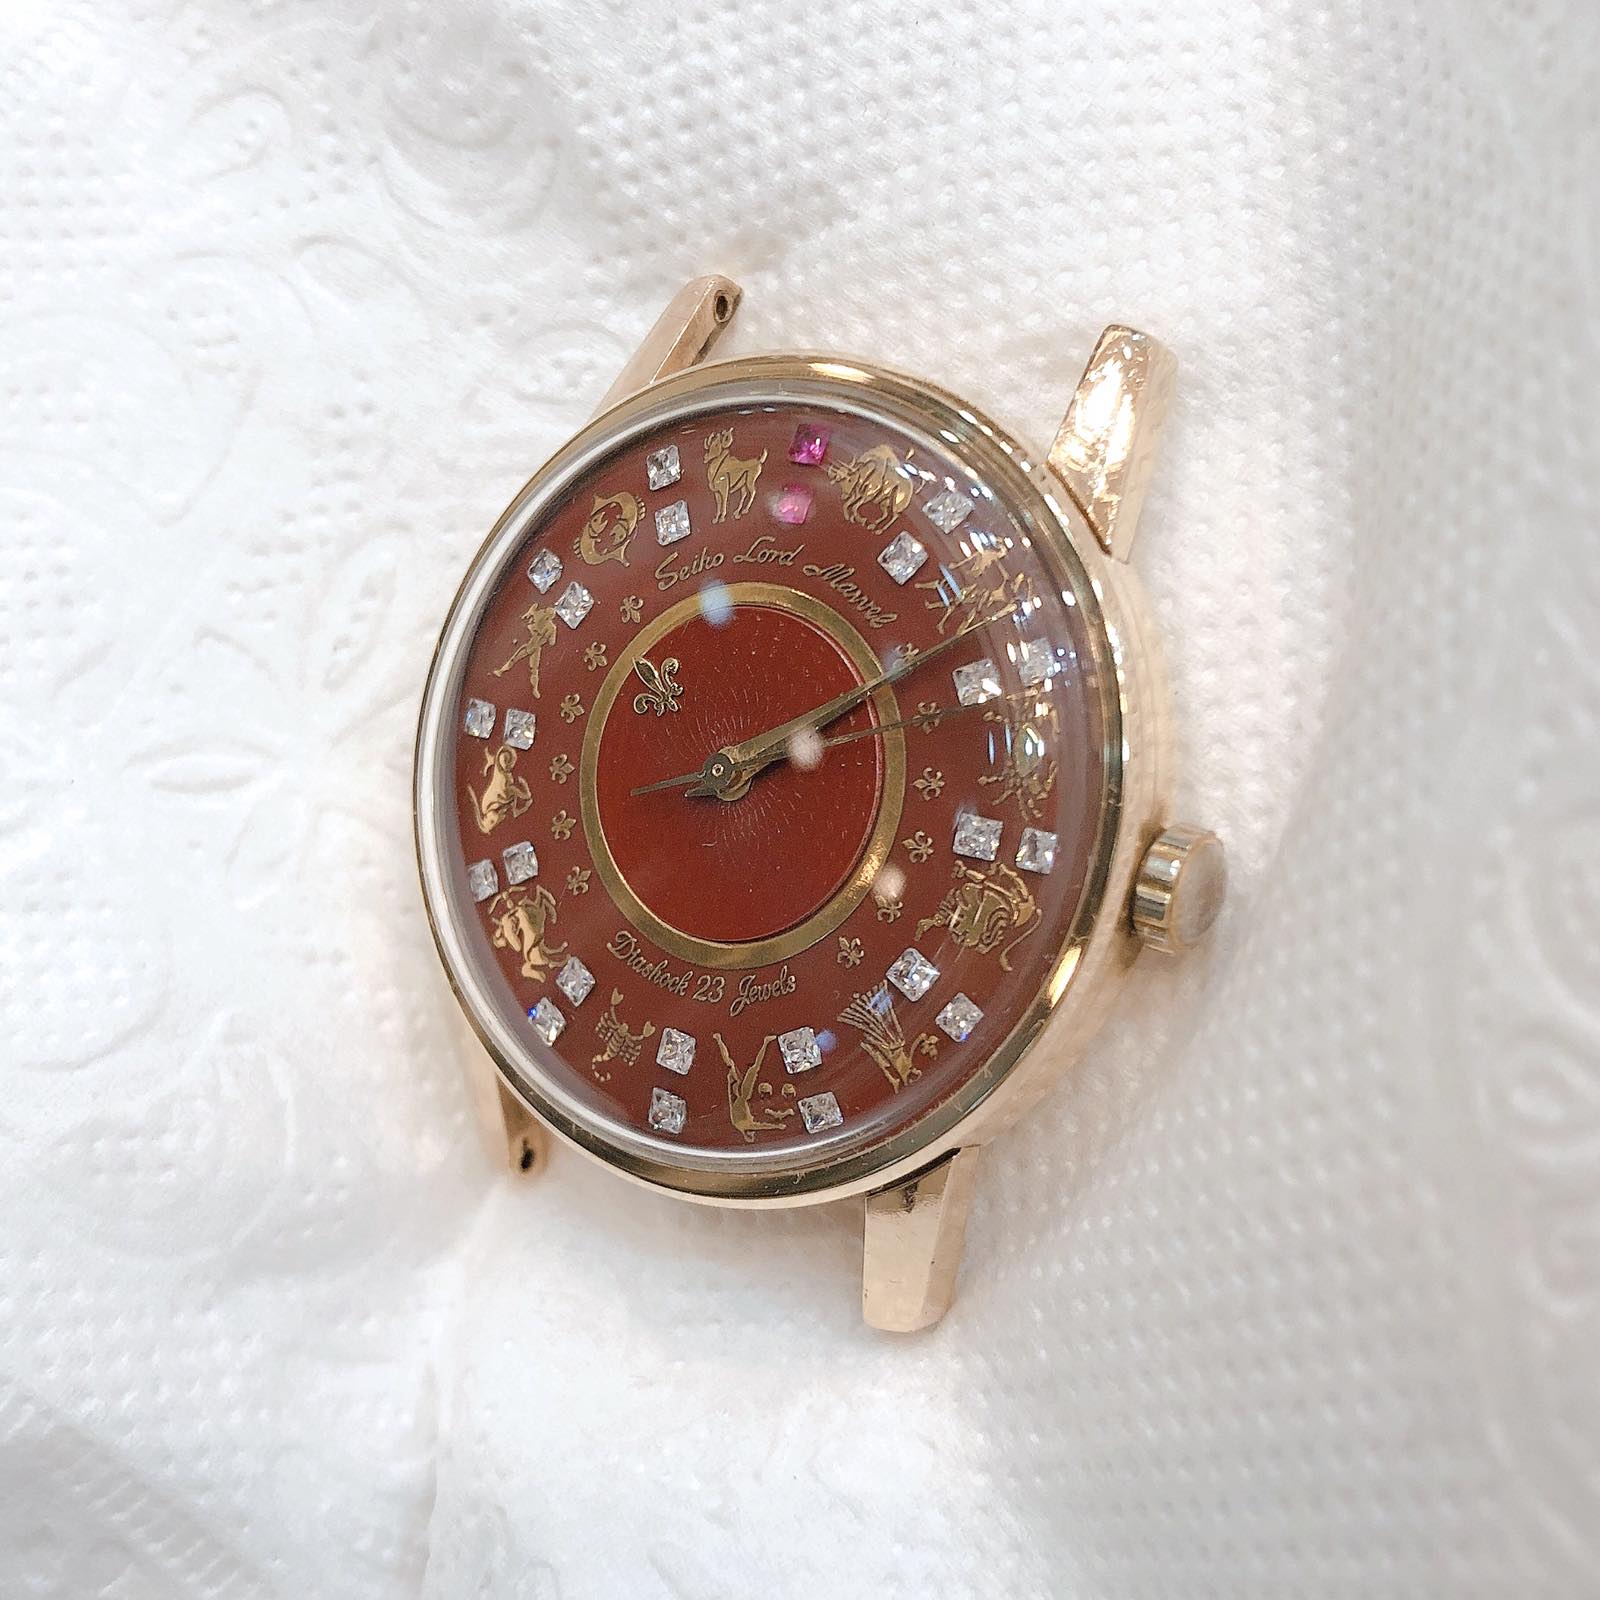 Đồng hồ cổ Seiko Lord Marvel phiên bản đặc biệt lên dây 14k goldfilled chính hãng Nhật Bản 